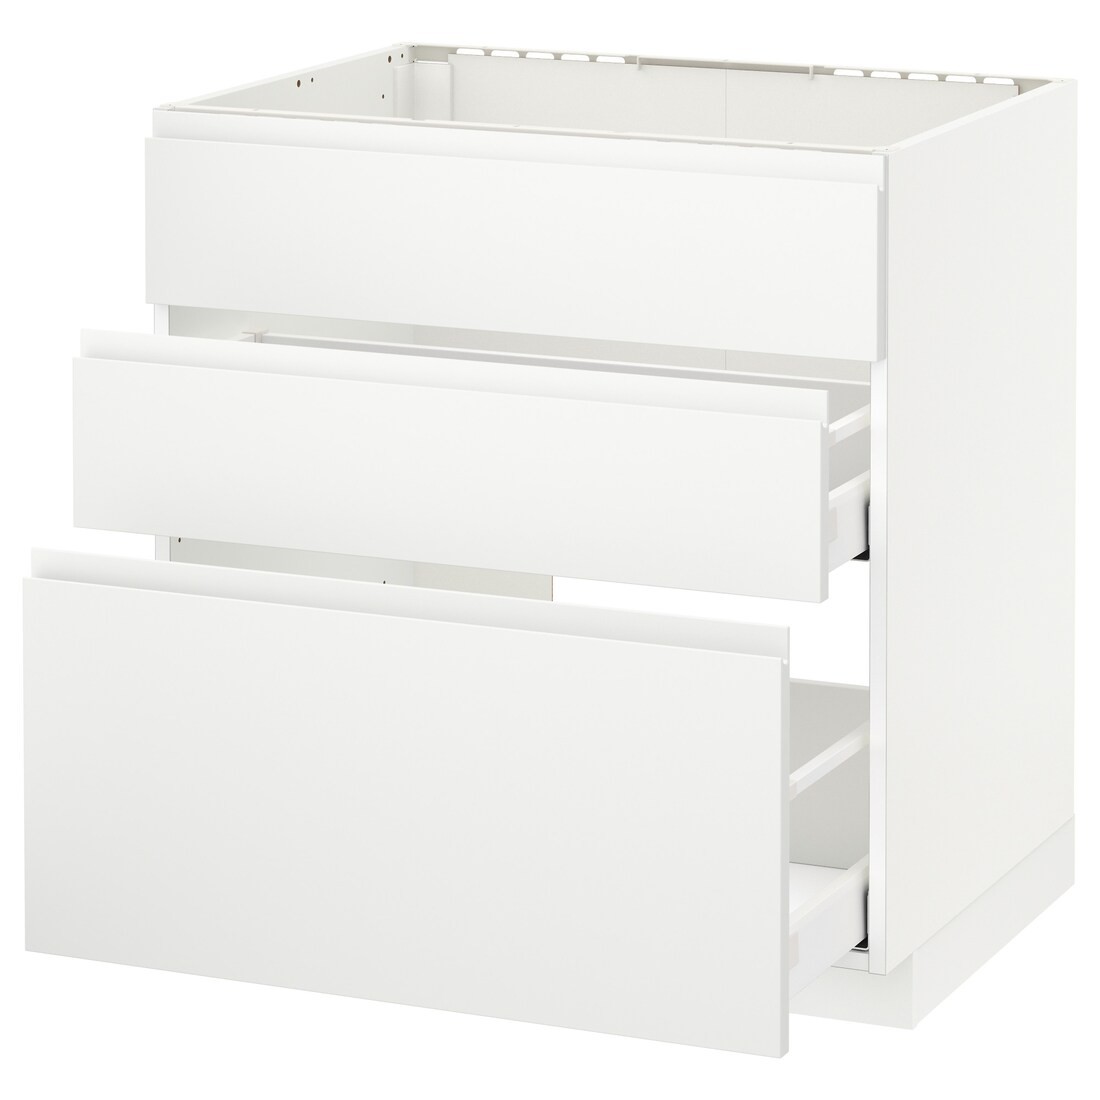 IKEA METOD МЕТОД / MAXIMERA МАКСИМЕРА Напольный шкаф под мойку с ящиками, белый / Voxtorp матовый белый, 80x60 см 99112678 991.126.78